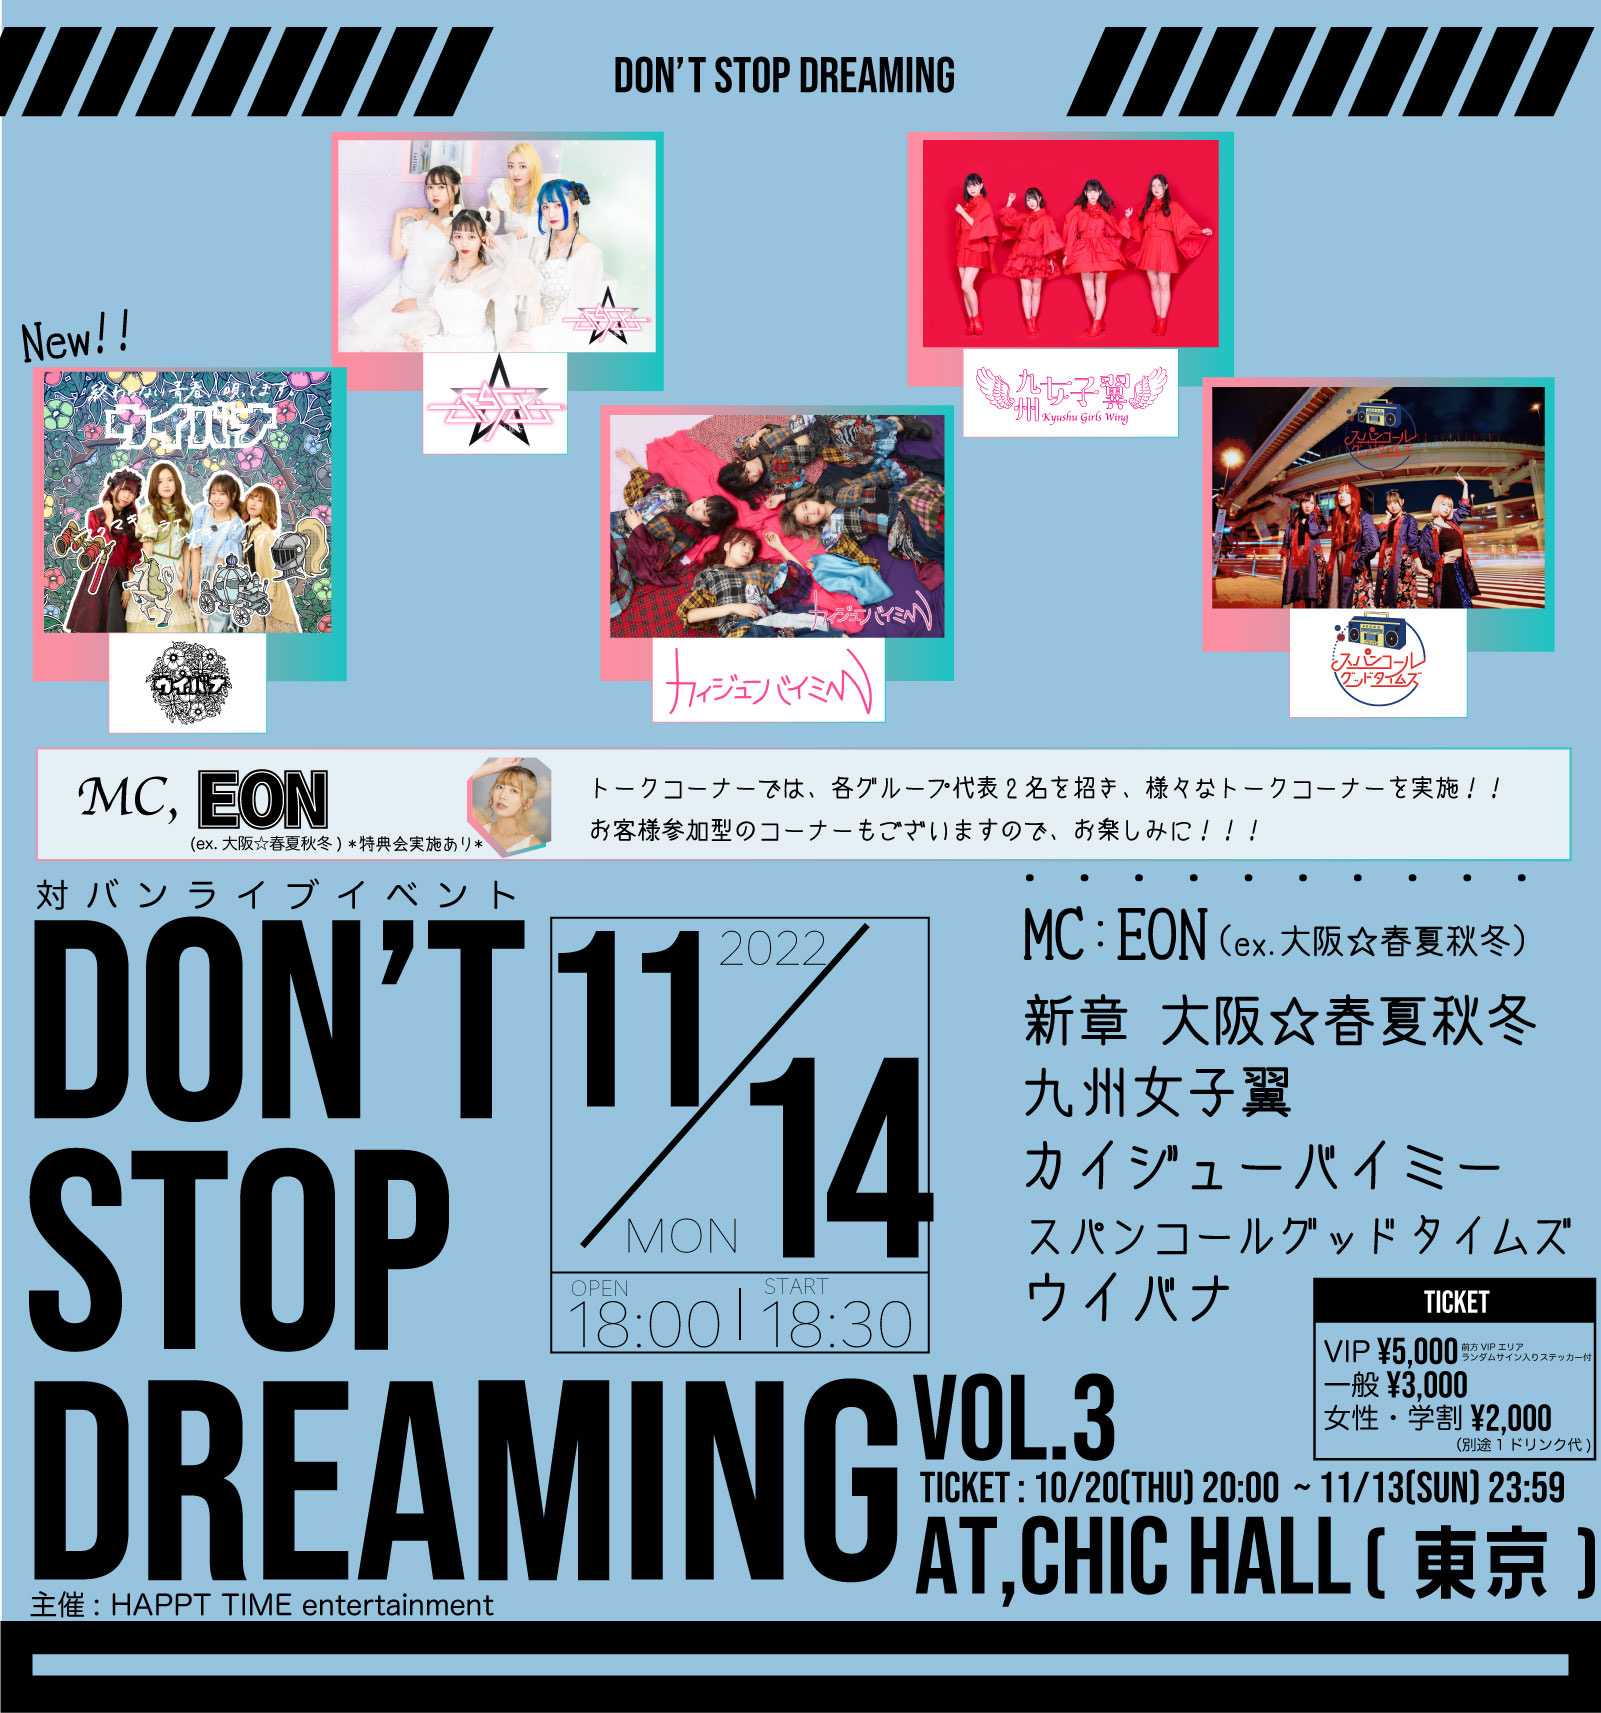 対バンライブイベント『DON'T STOP DREAMING vol.3』